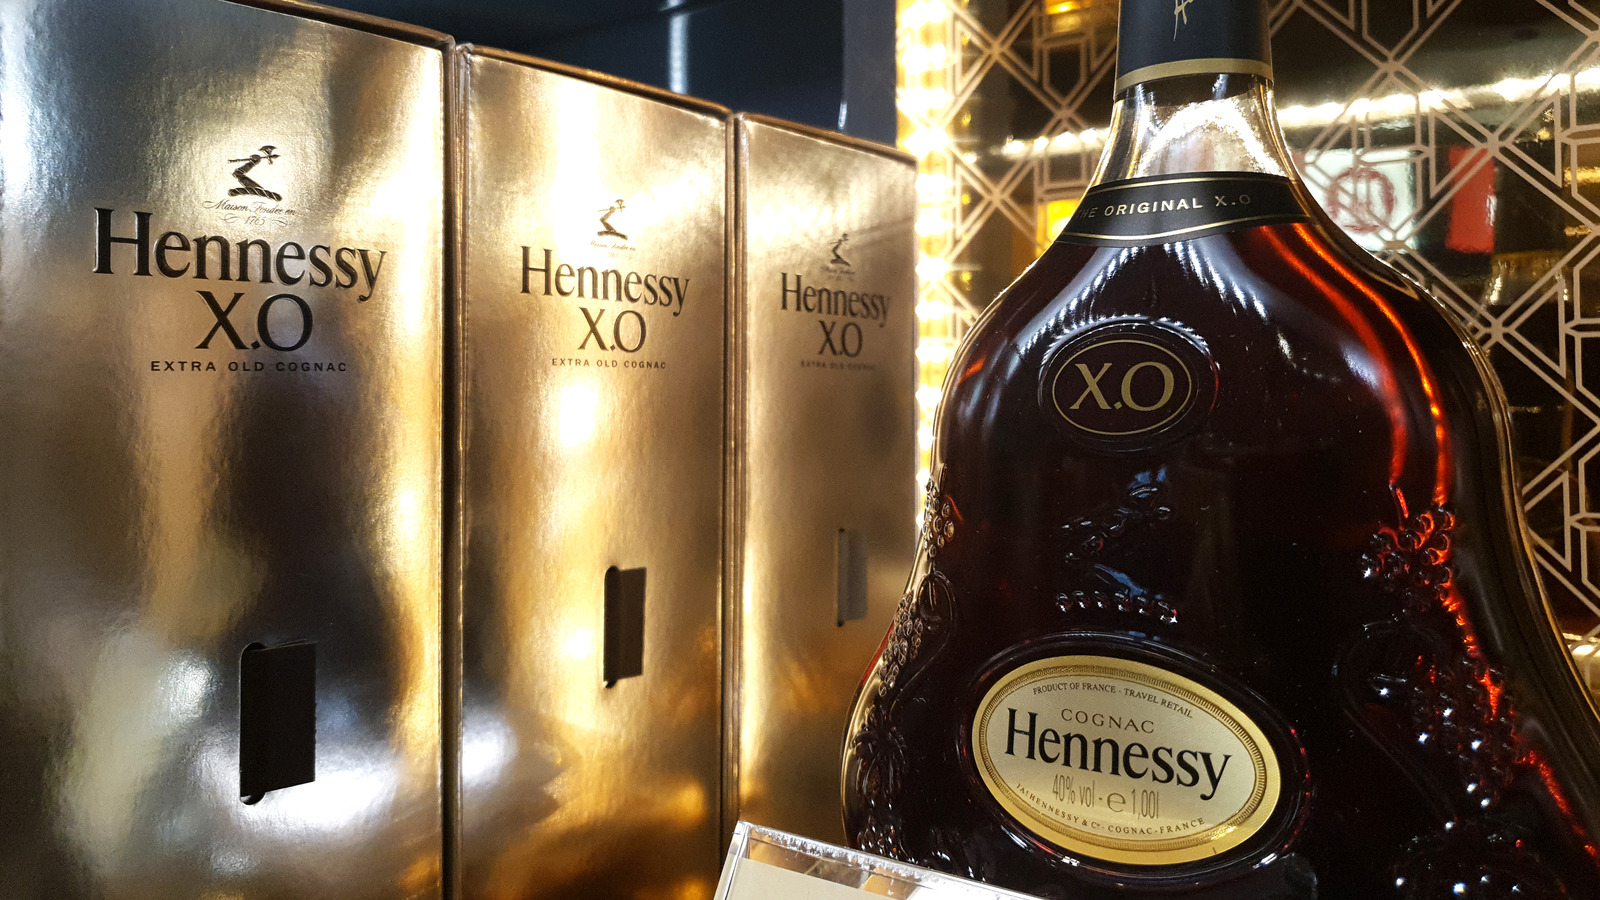 Cognac taste of Hennessy V.S.O.P worldwide